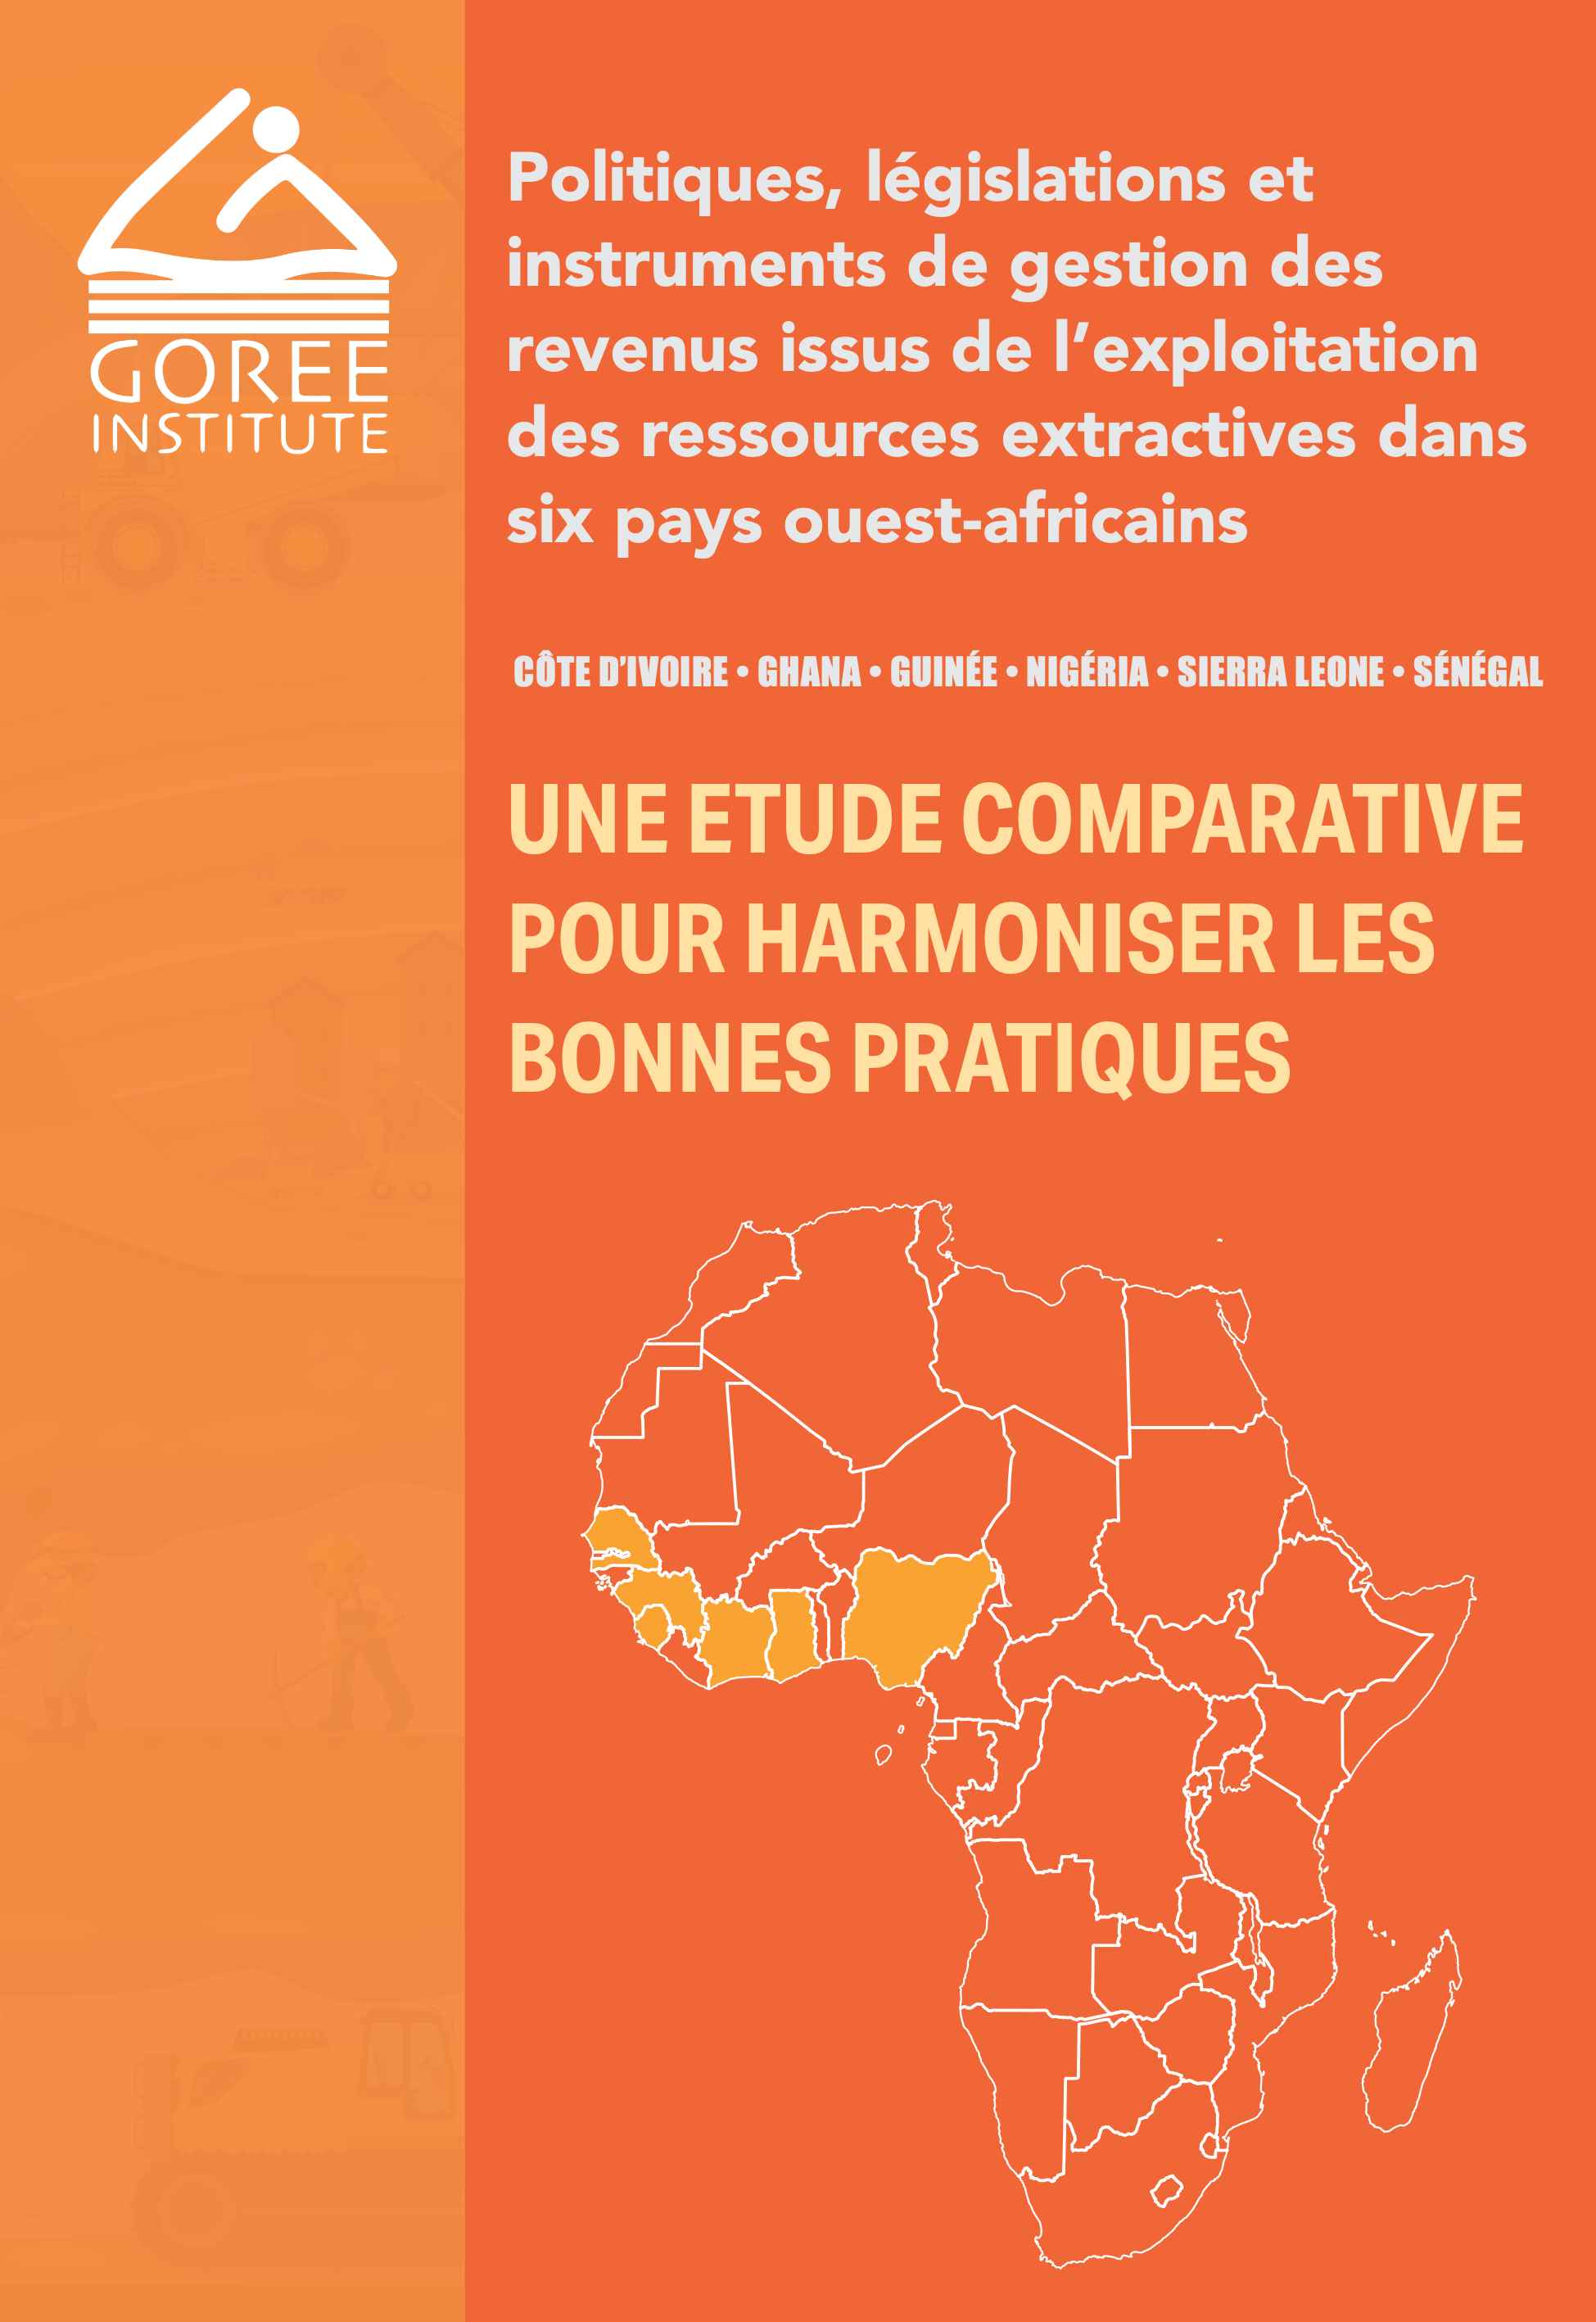 Politiques, législations et instruments de gestion des revenus issus de l’exploitation des ressources extractives dans six pays ouest-africains page 1